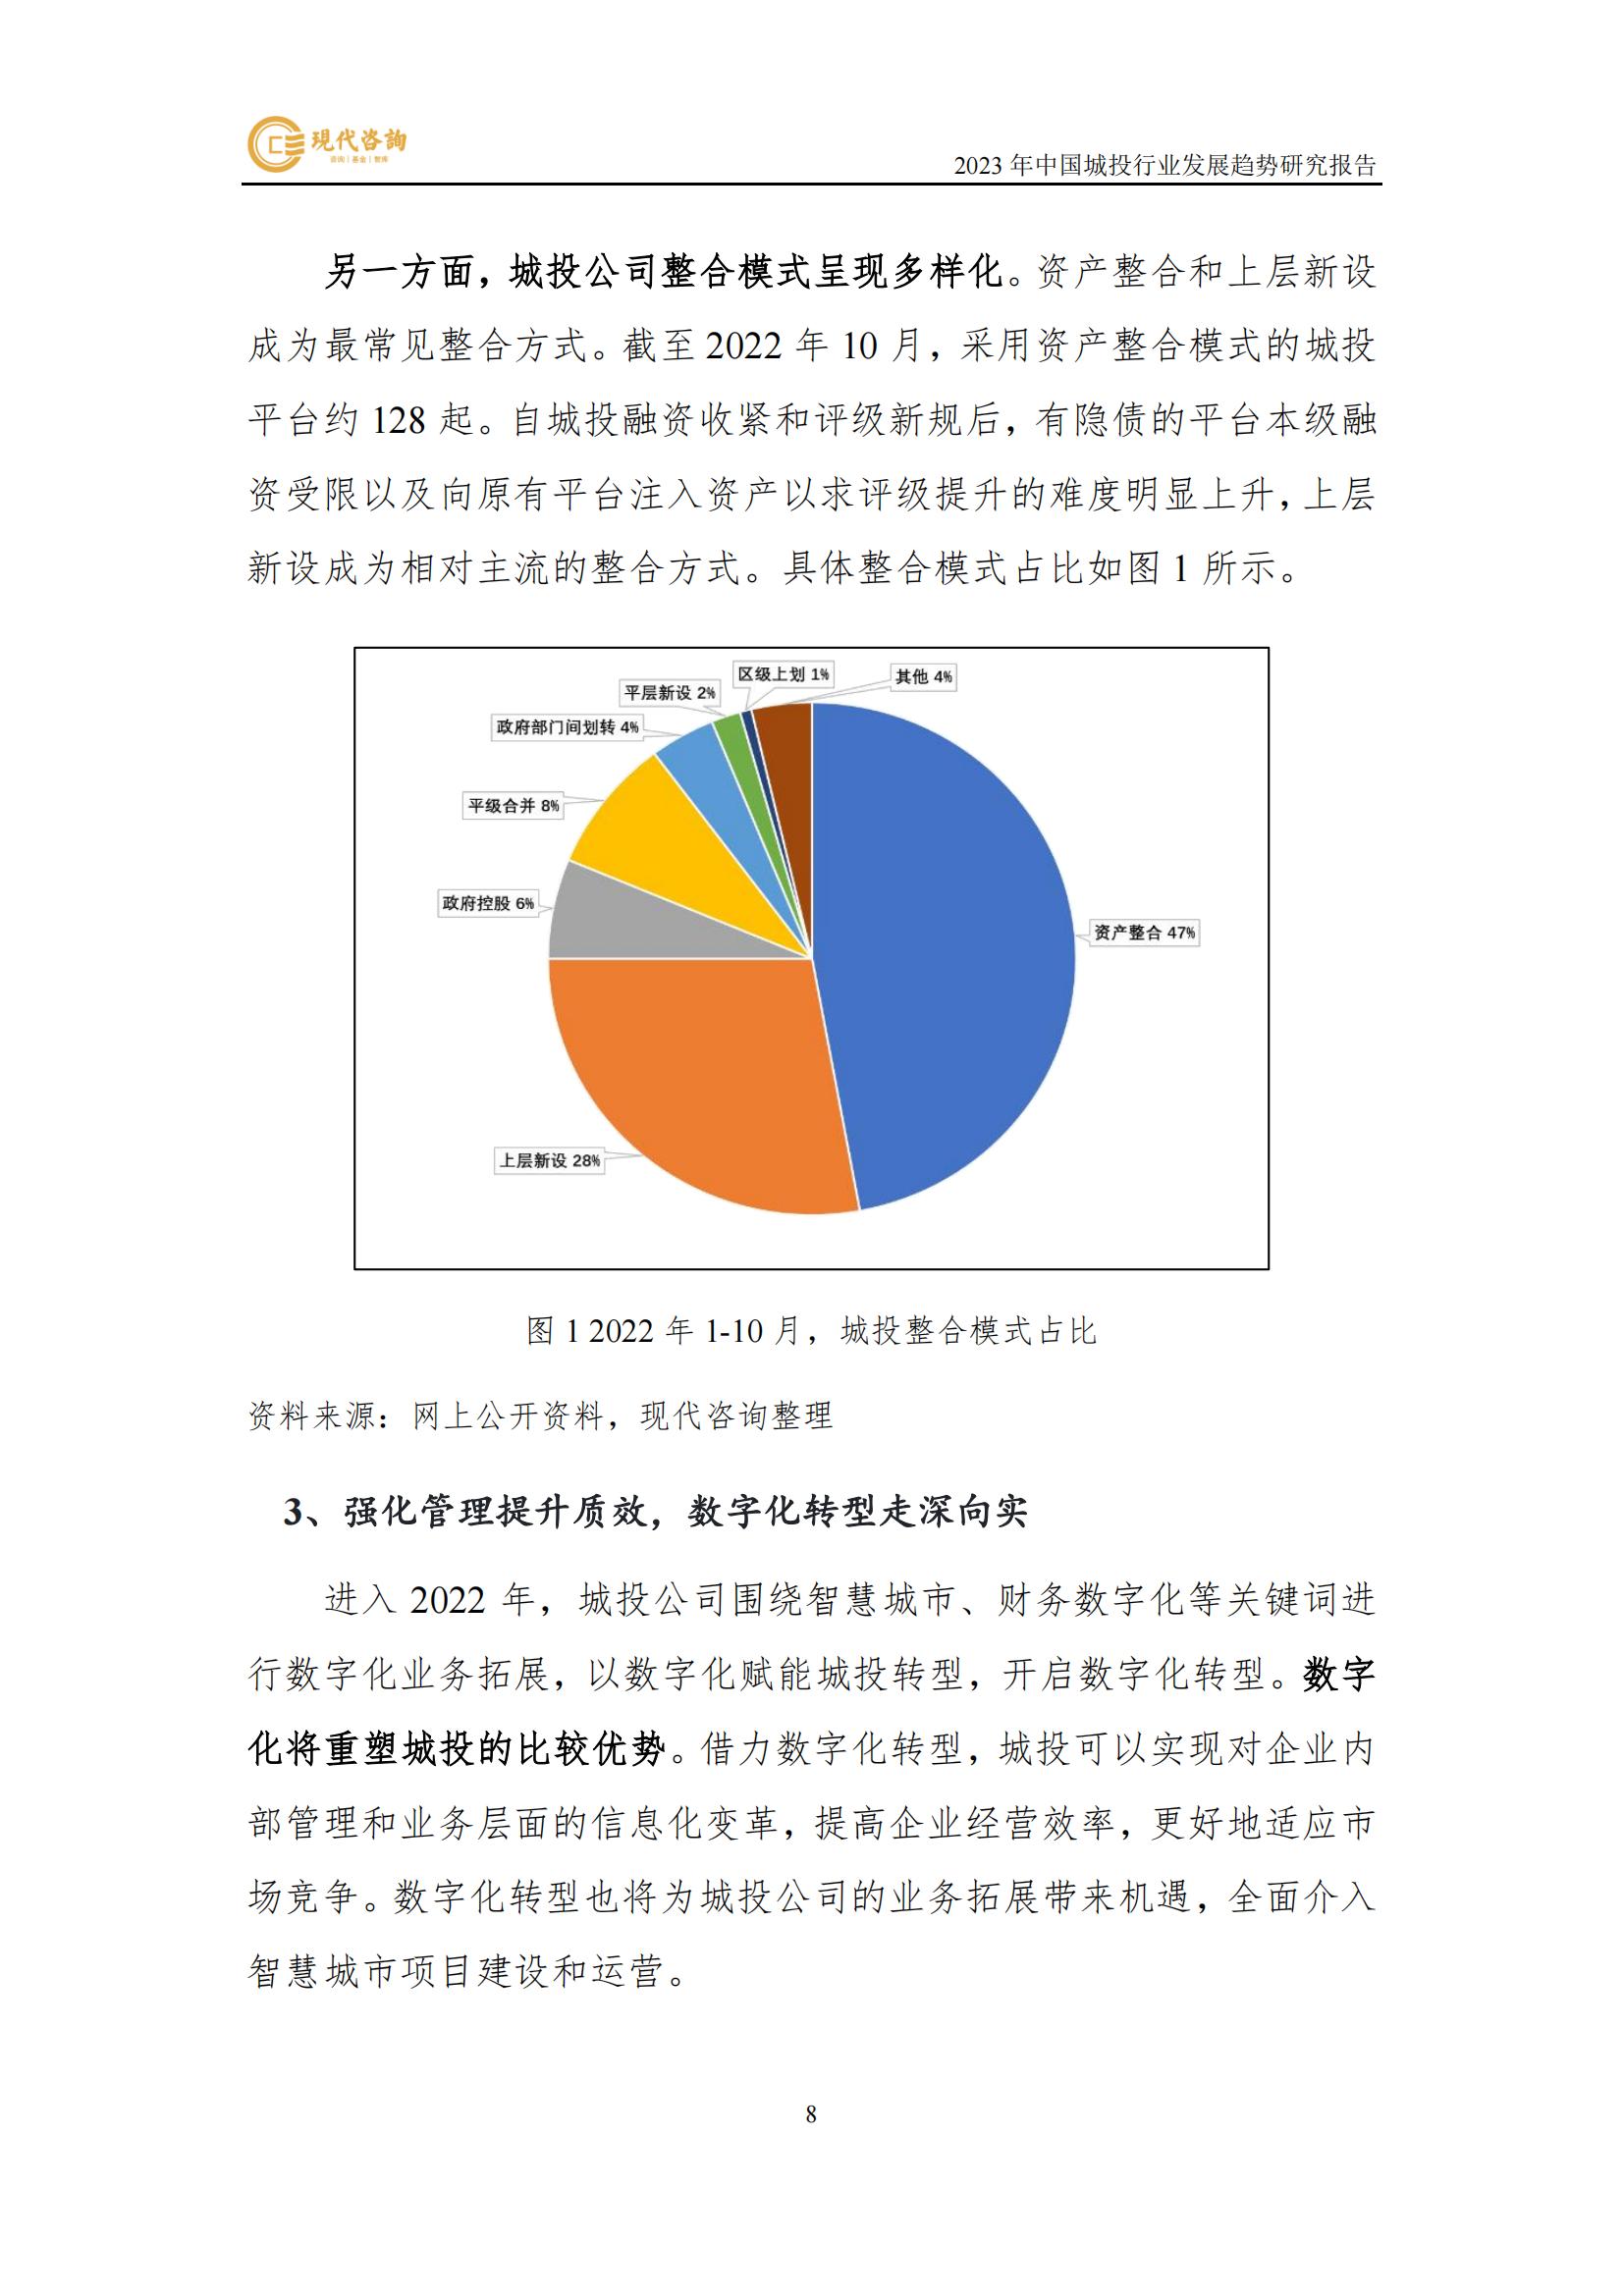 中国城投行业发展趋势研究报告（2023）(2)_14.jpg